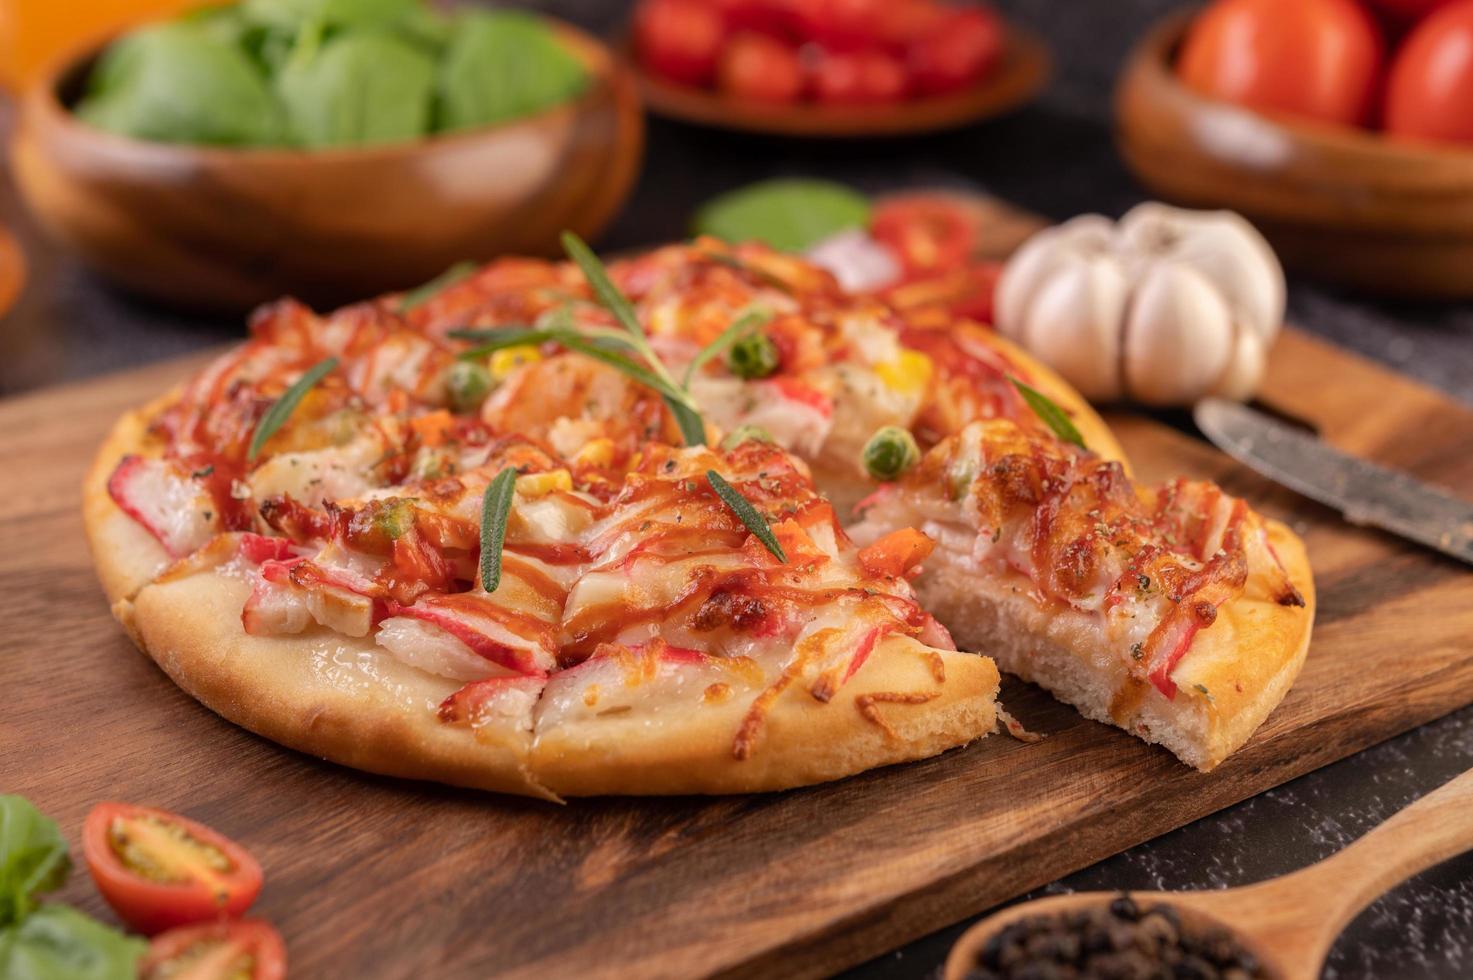 pizza maison avec des ingrédients photo